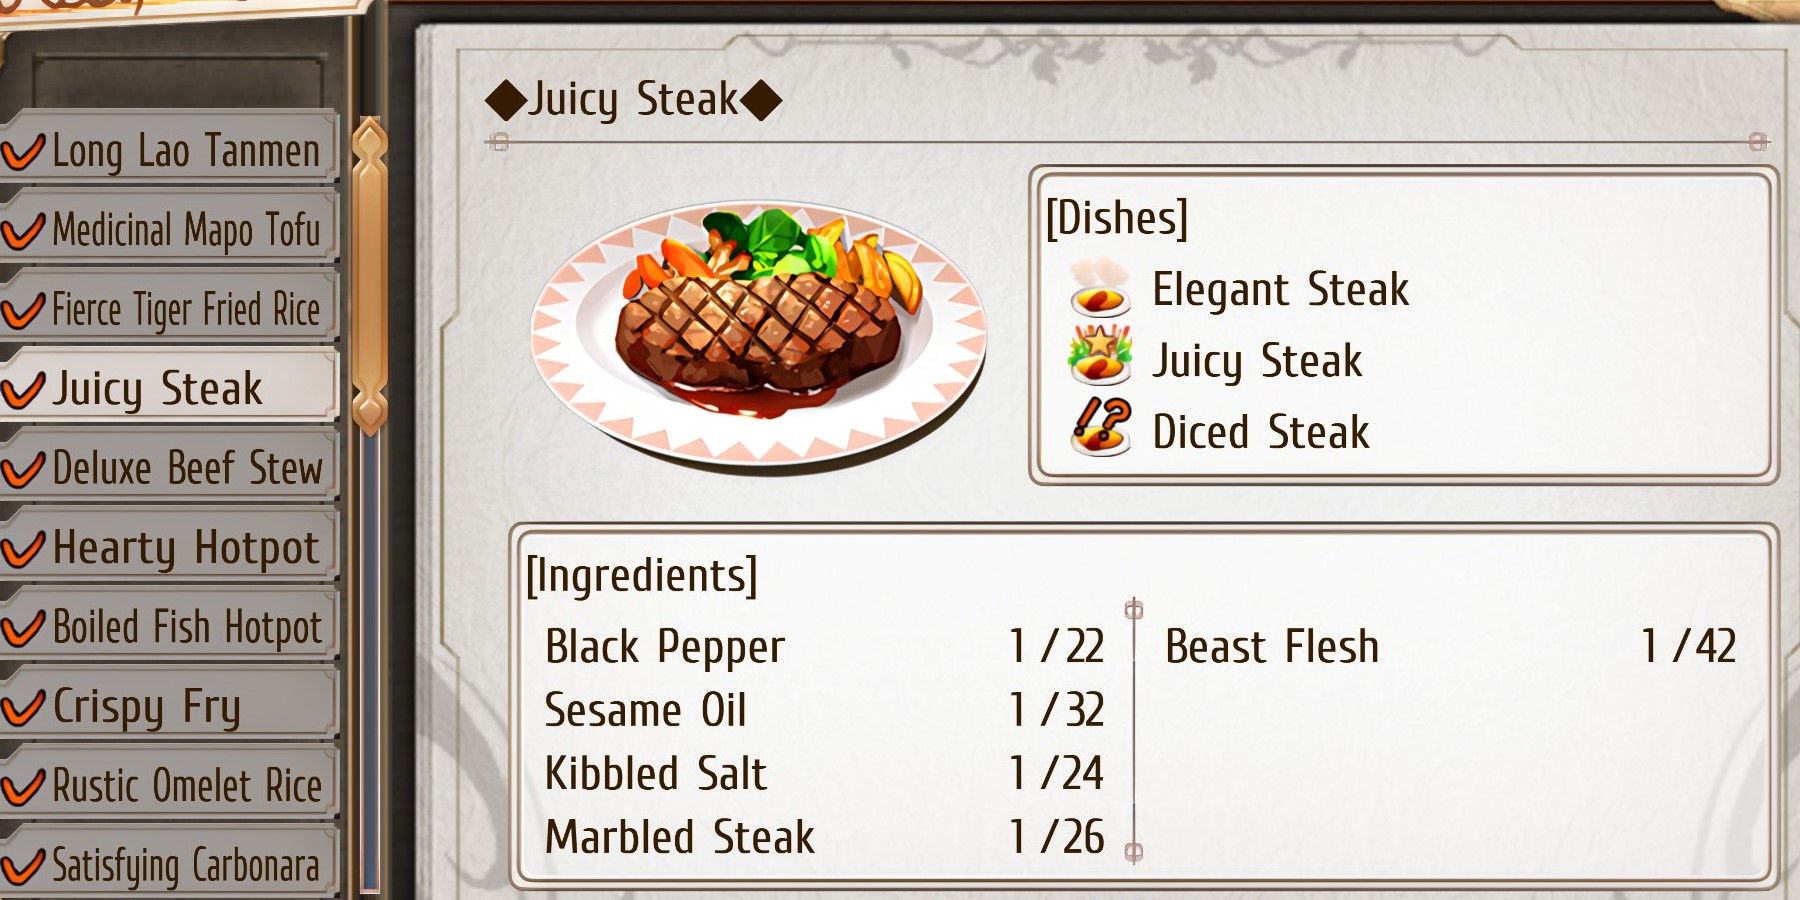 Juicy Steak recipe and ingredient list